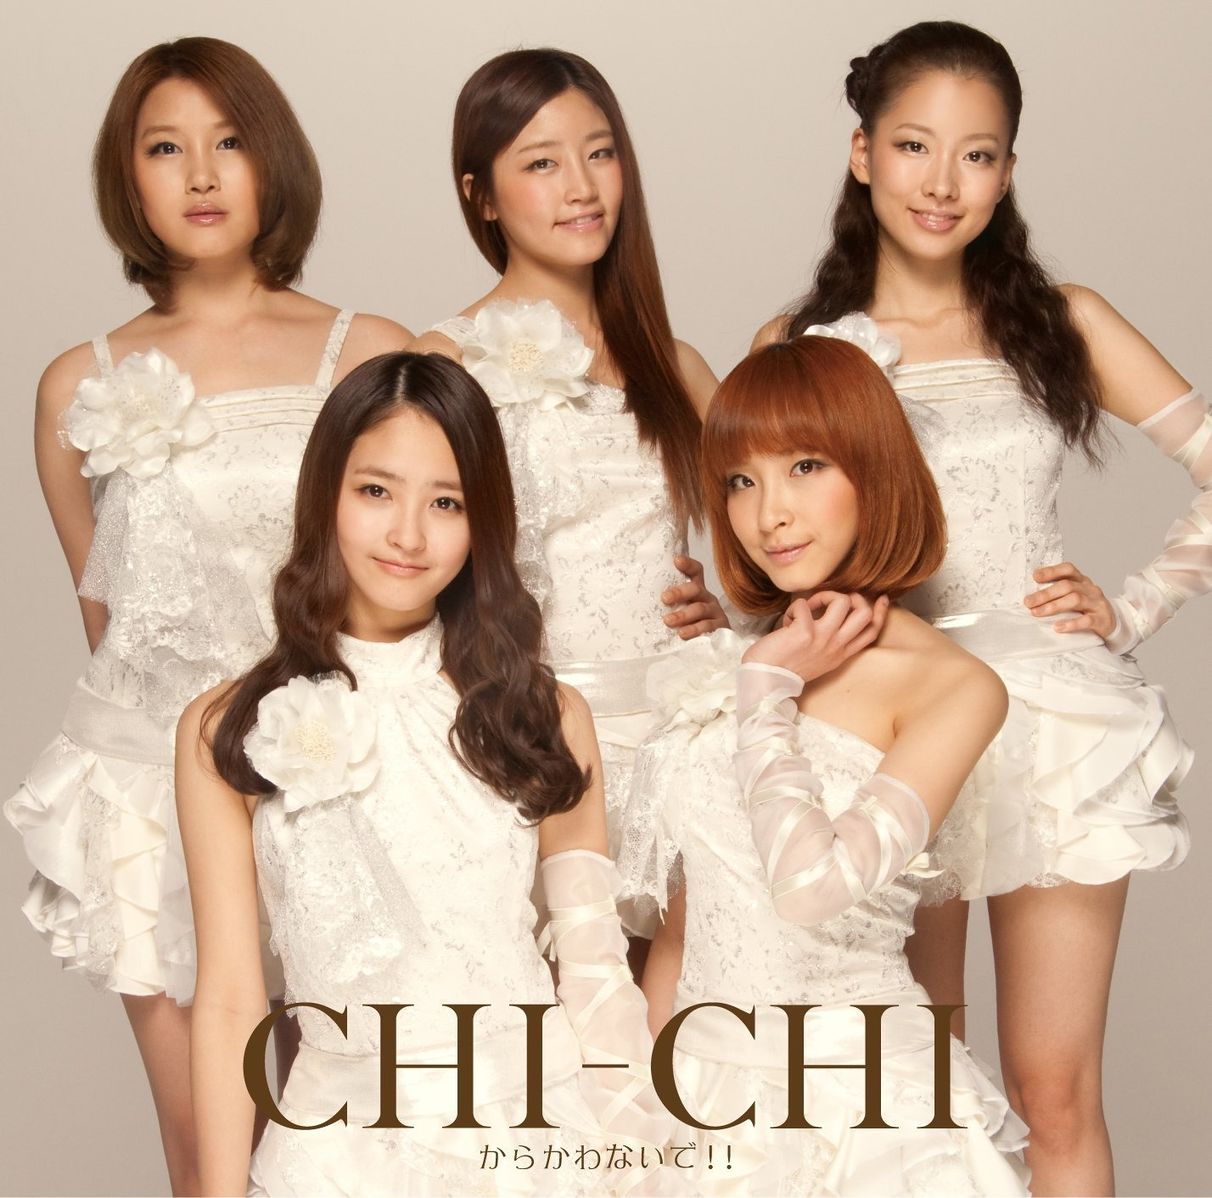 CHI CHI — Sexy Doll cover artwork